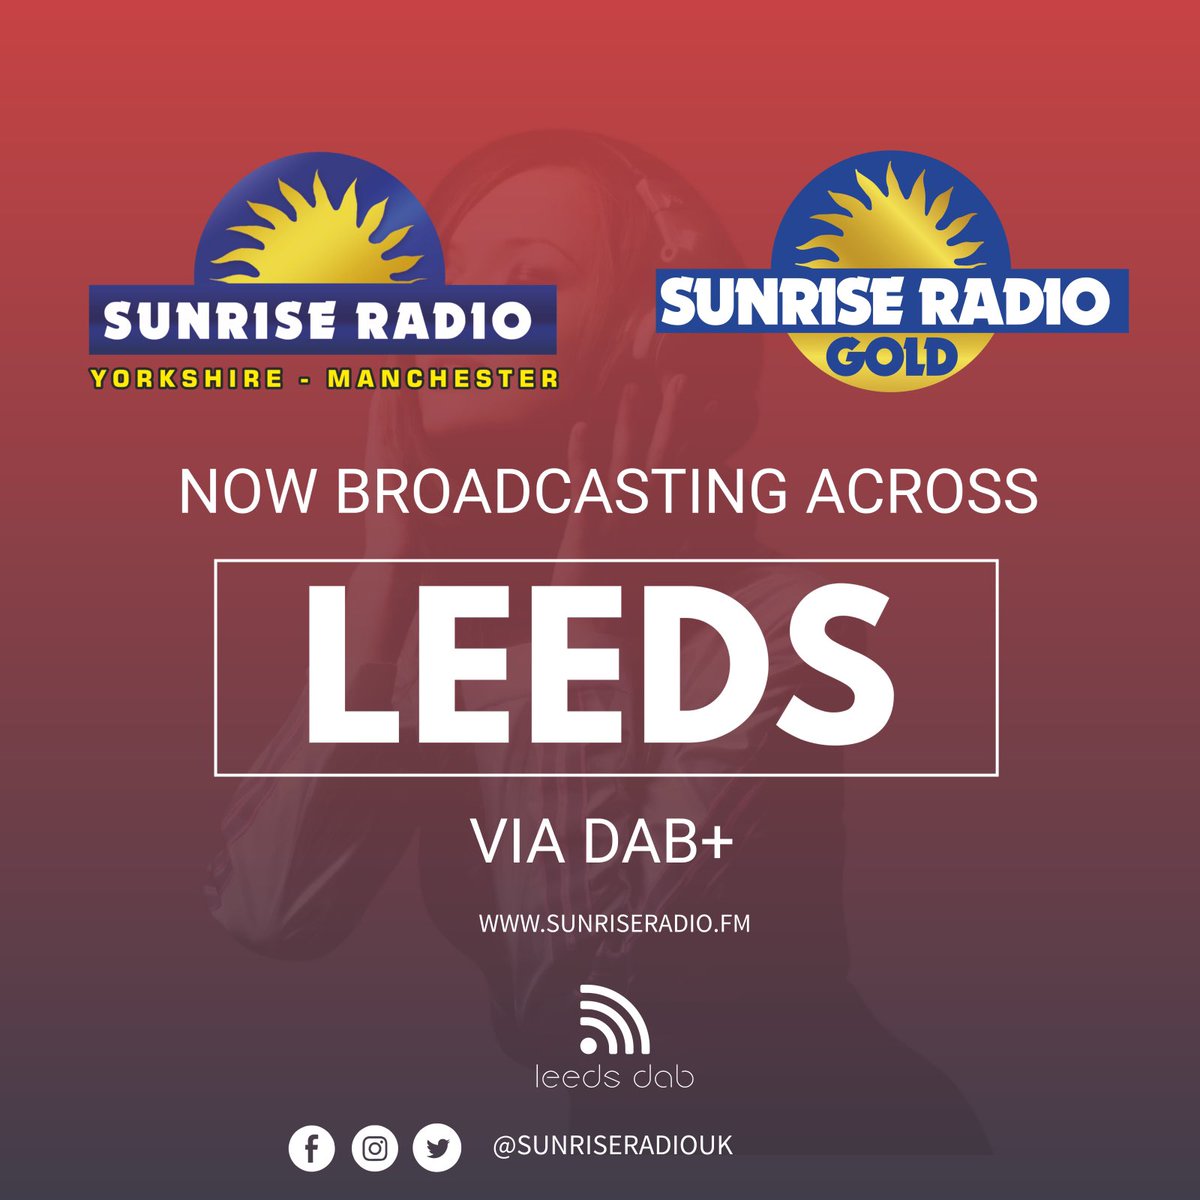 Our number one main service, Sunrise Radio and our service Sunrise Radio Gold now available to hear on DAB+ across Leeds!!! 🥳🥳 #sunriseradio #sunriseradiouk #sunriseradiogold #leeds #digitalradio #ssdab